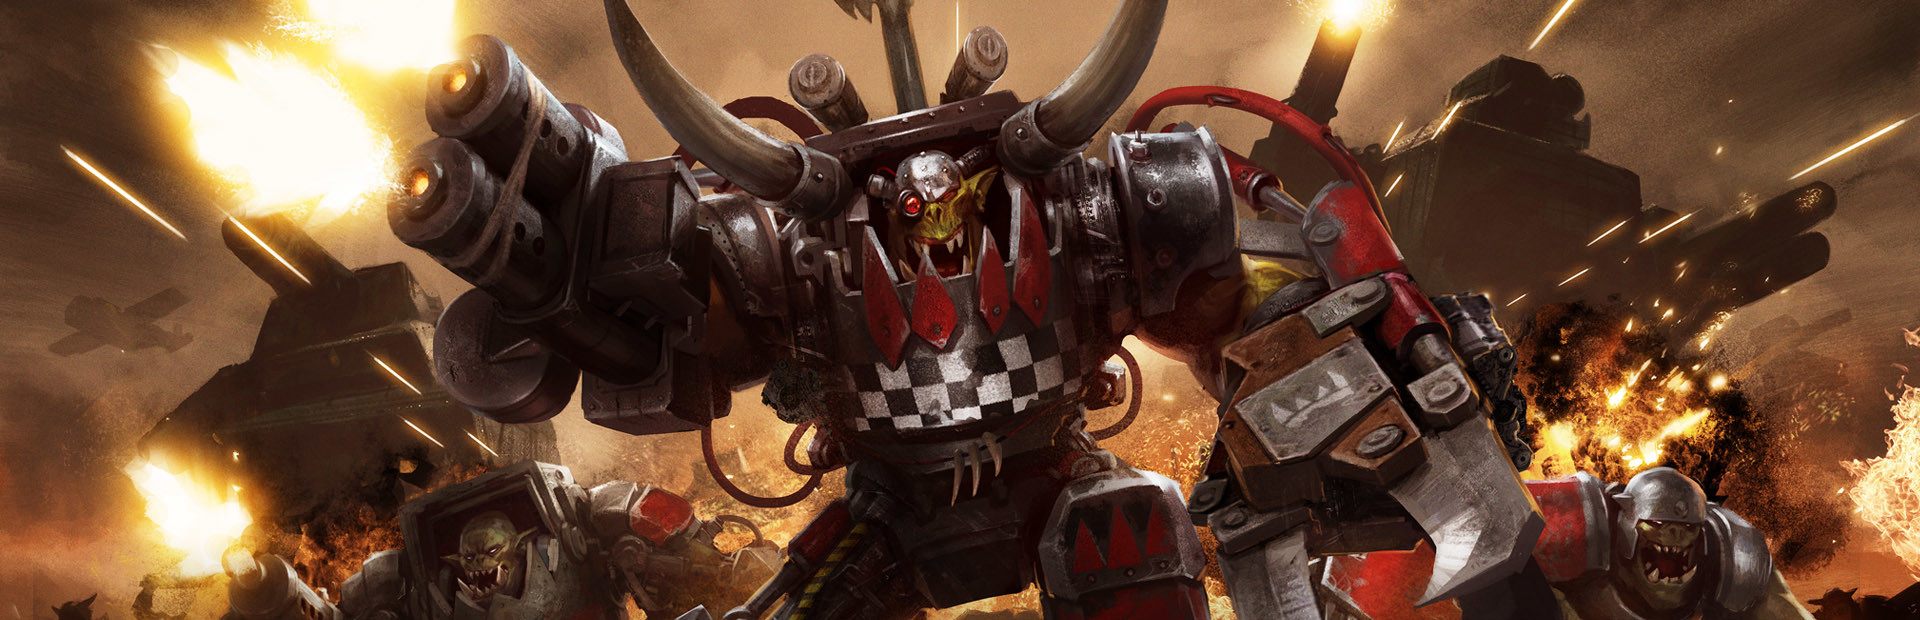 Warhammer 40,000: Armageddon - Da Orks cover image